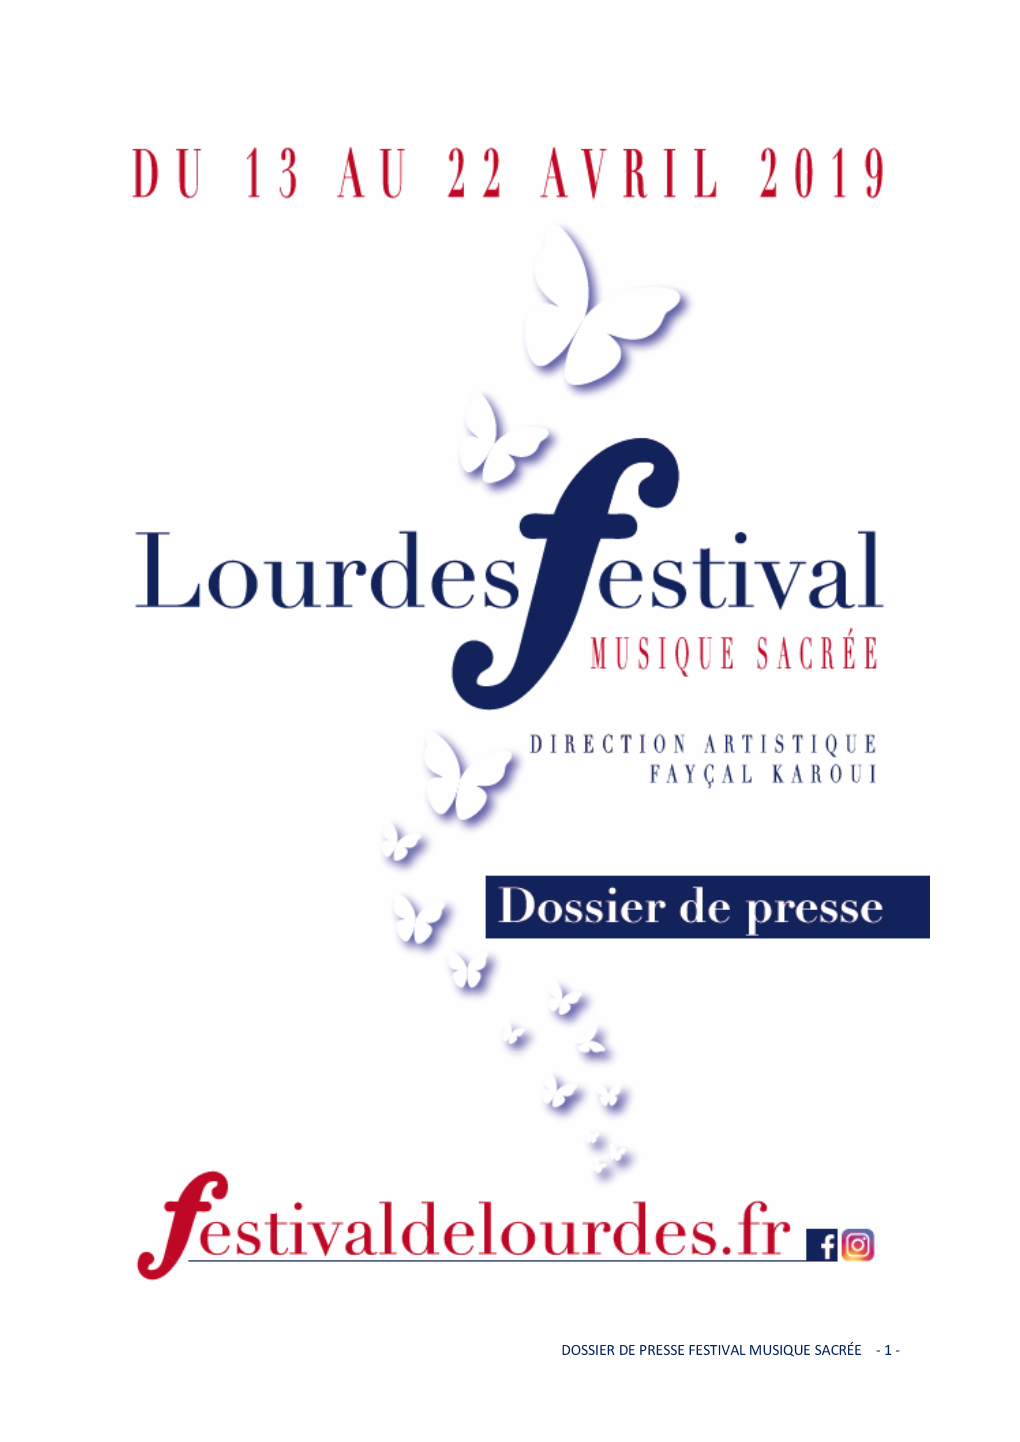 Festival Musique Sacree Lourdes-Dp 2019